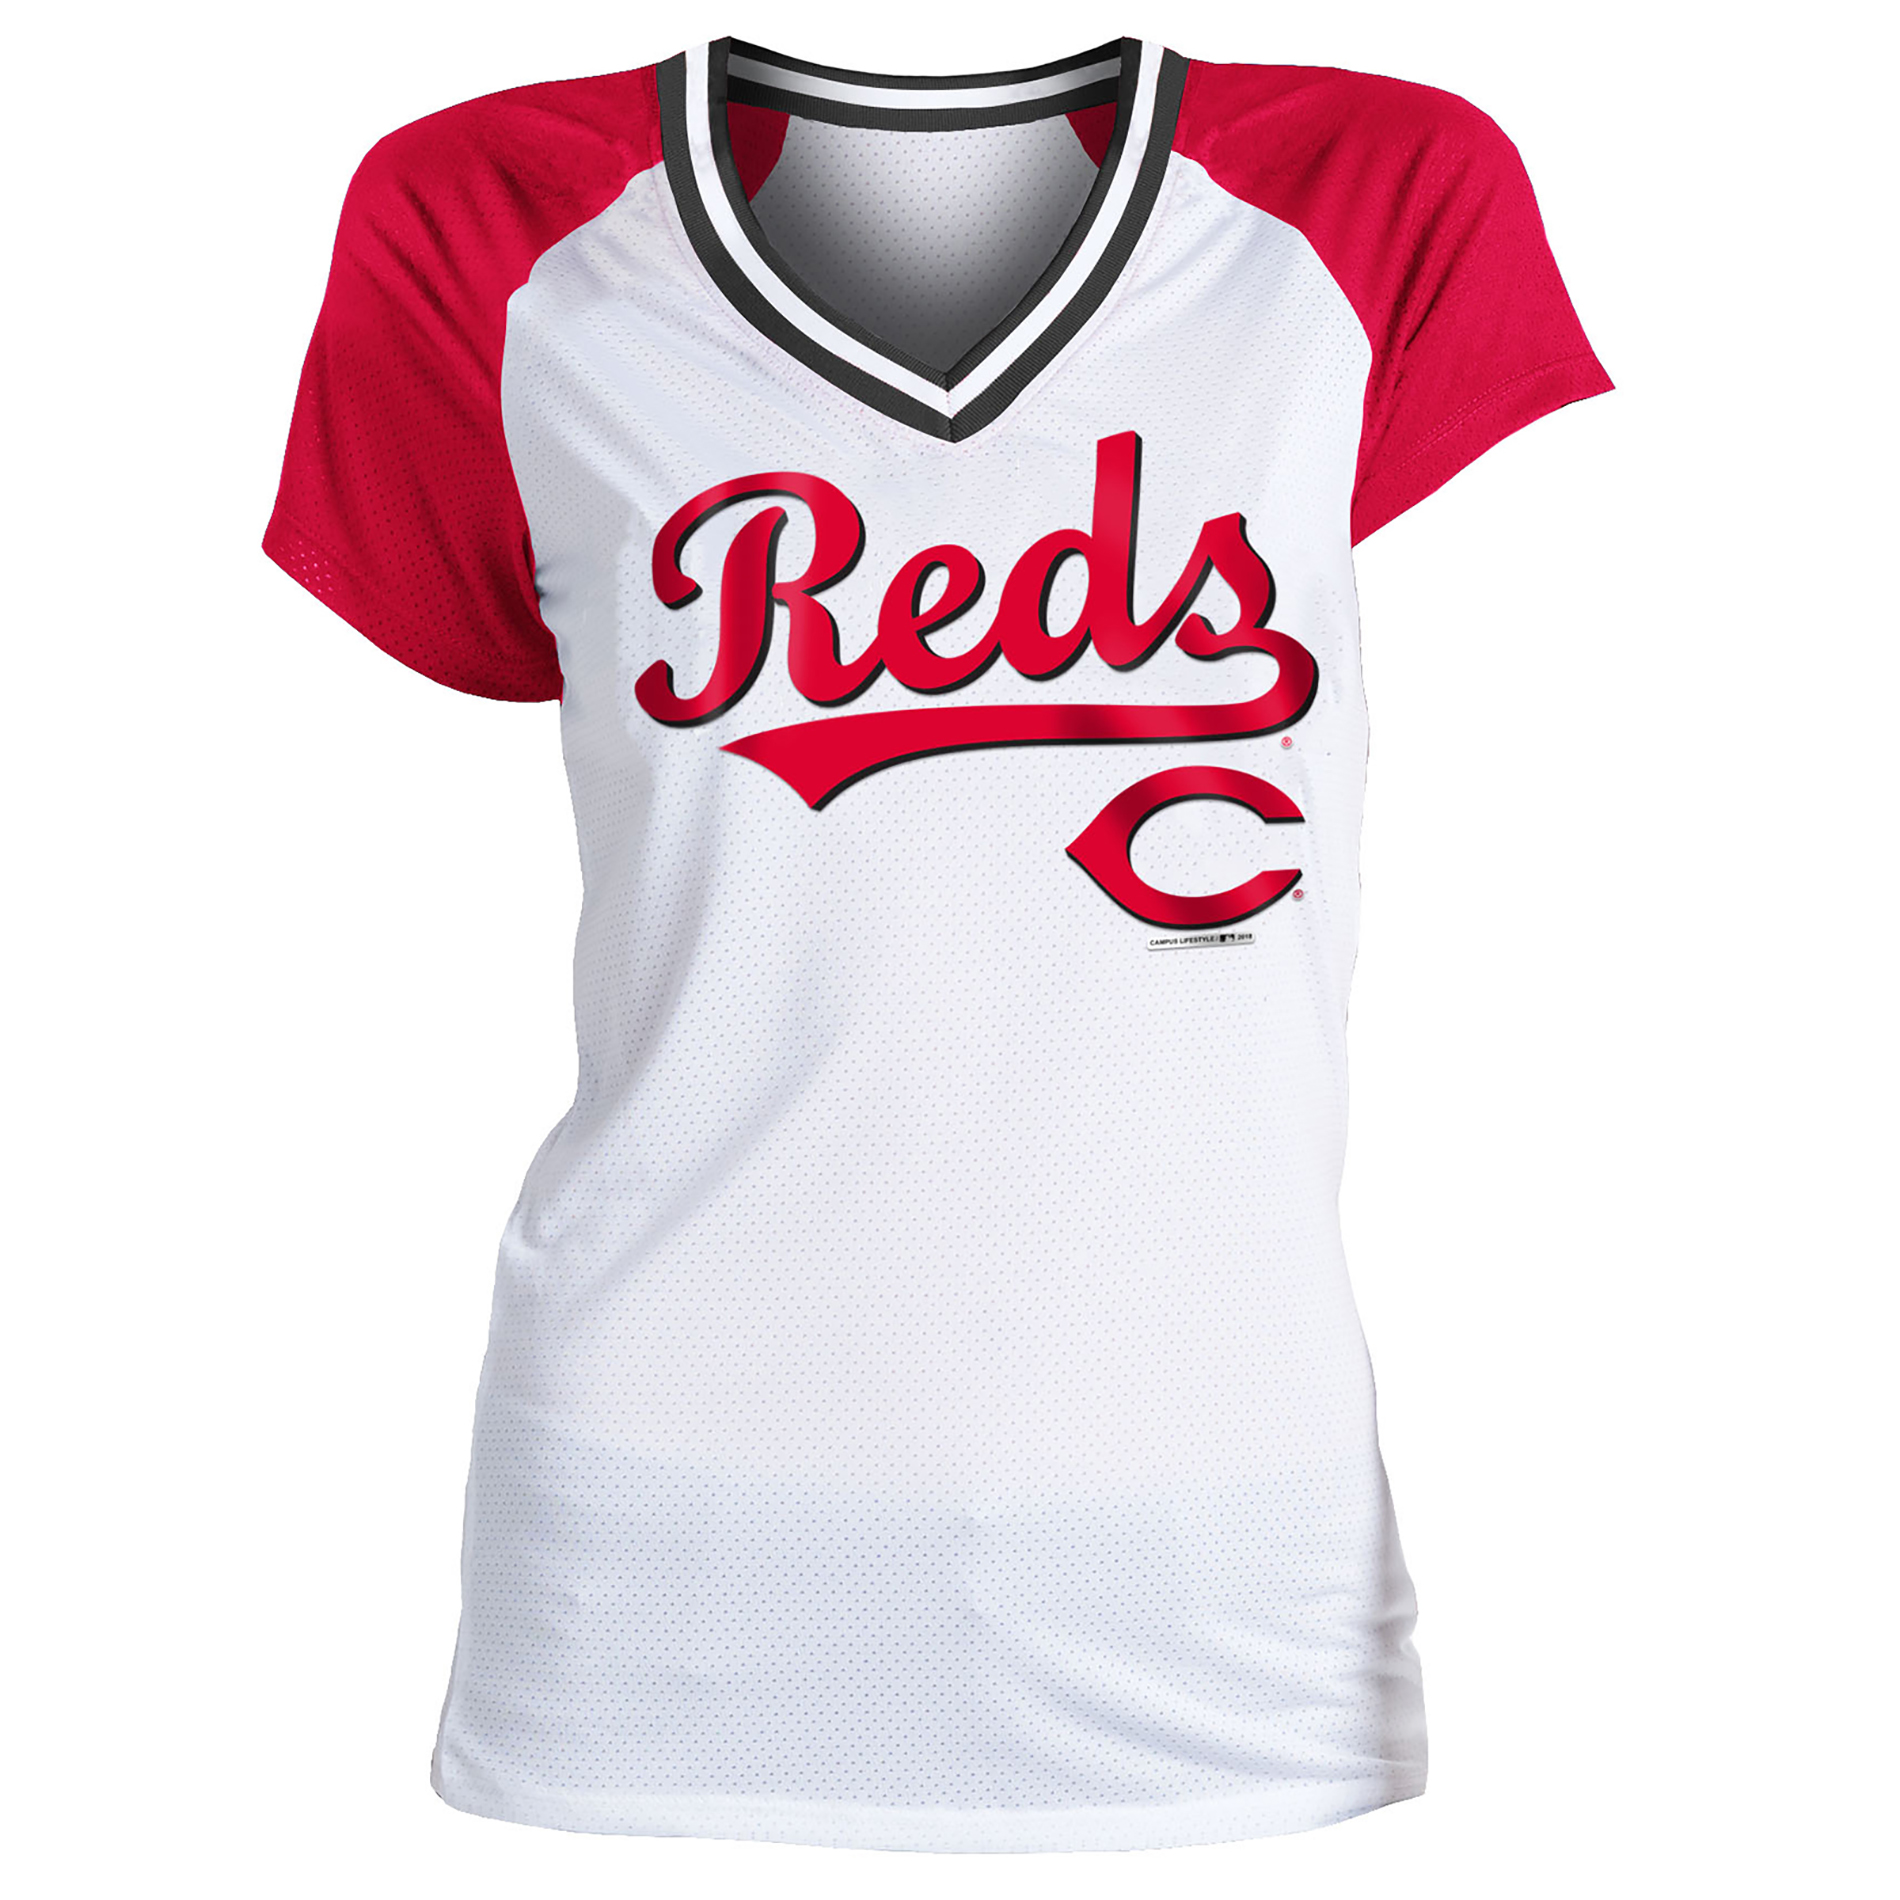 reds jersey women's